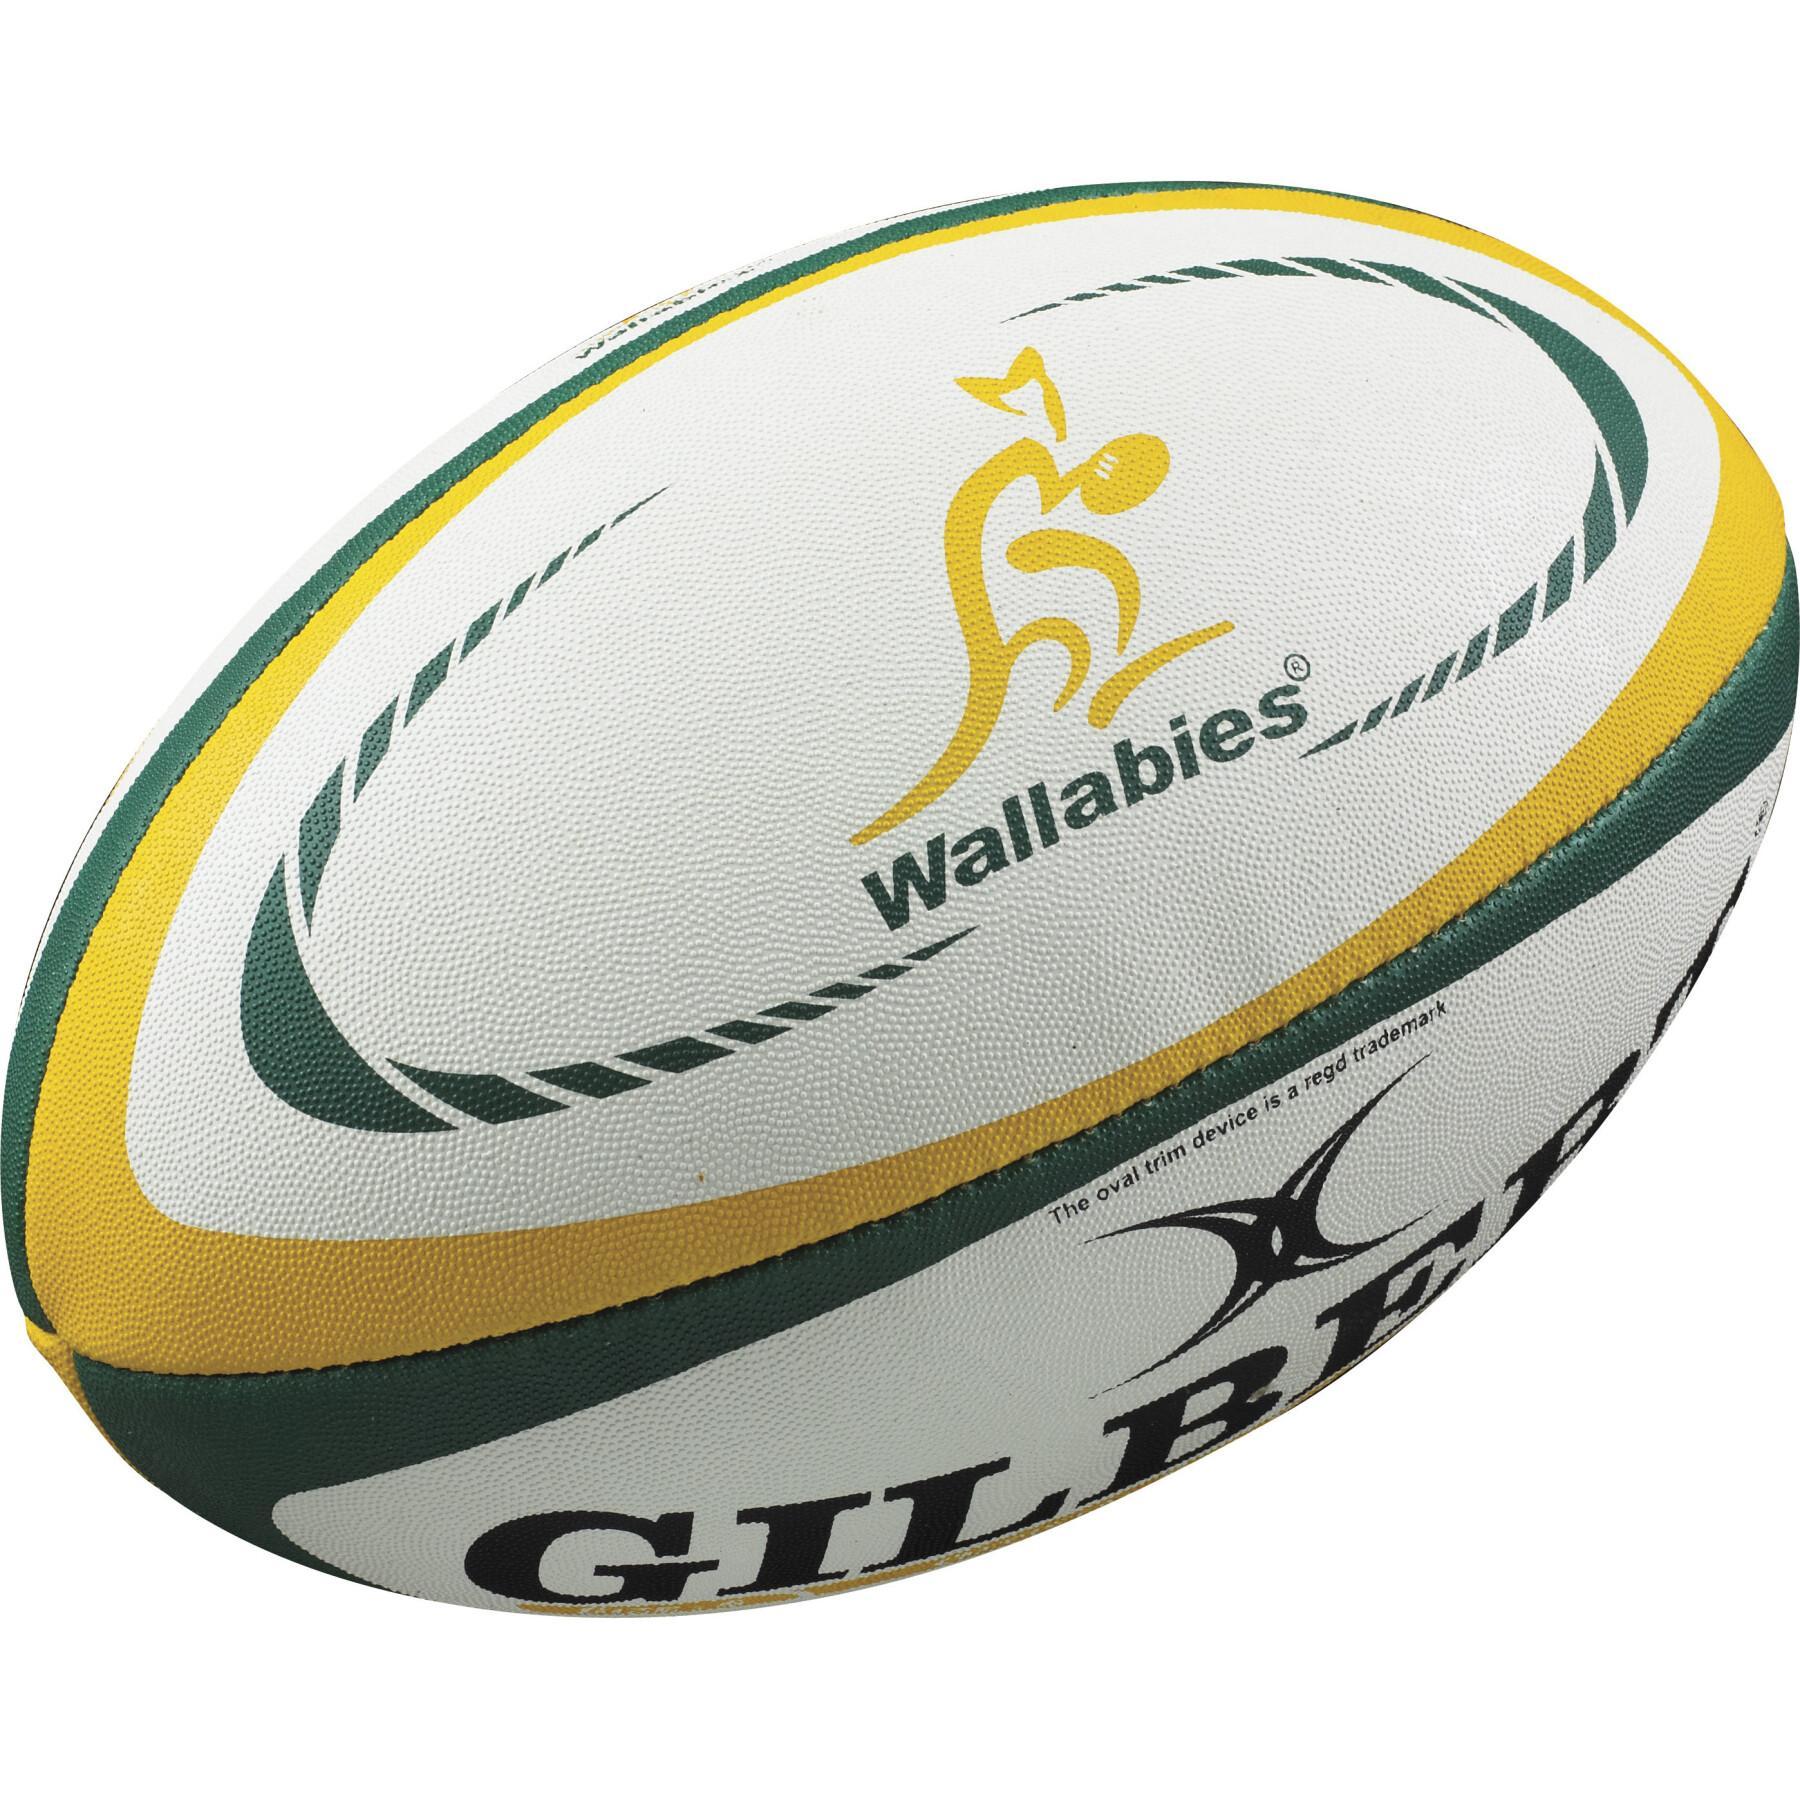 Replika av rugbyboll Gilbert Australie (taille 5)